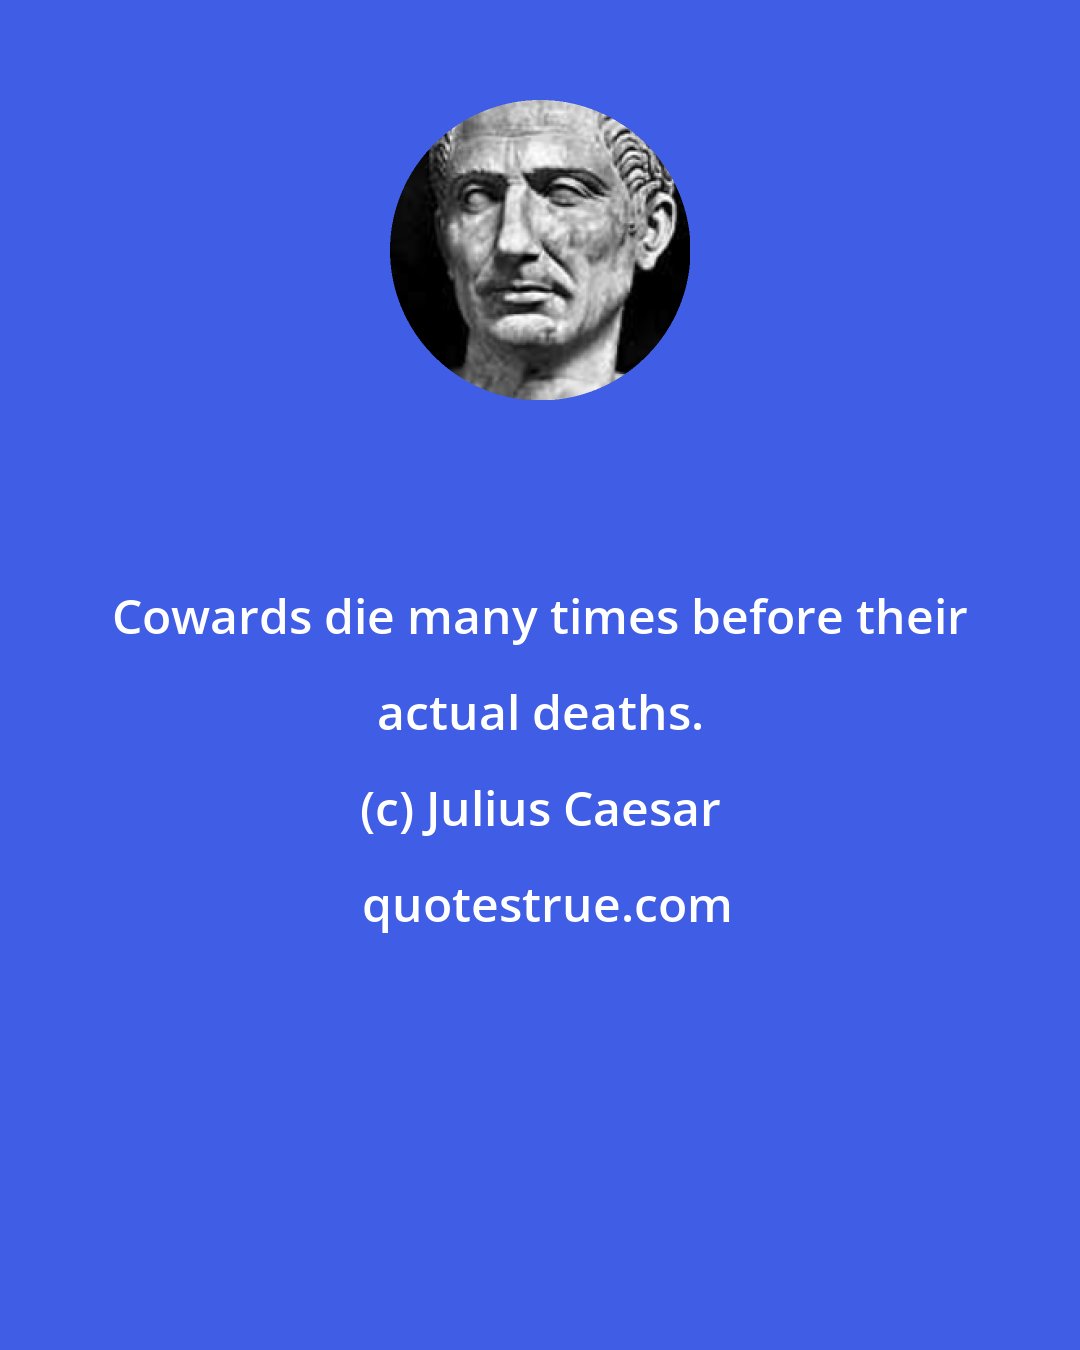 Julius Caesar: Cowards die many times before their actual deaths.